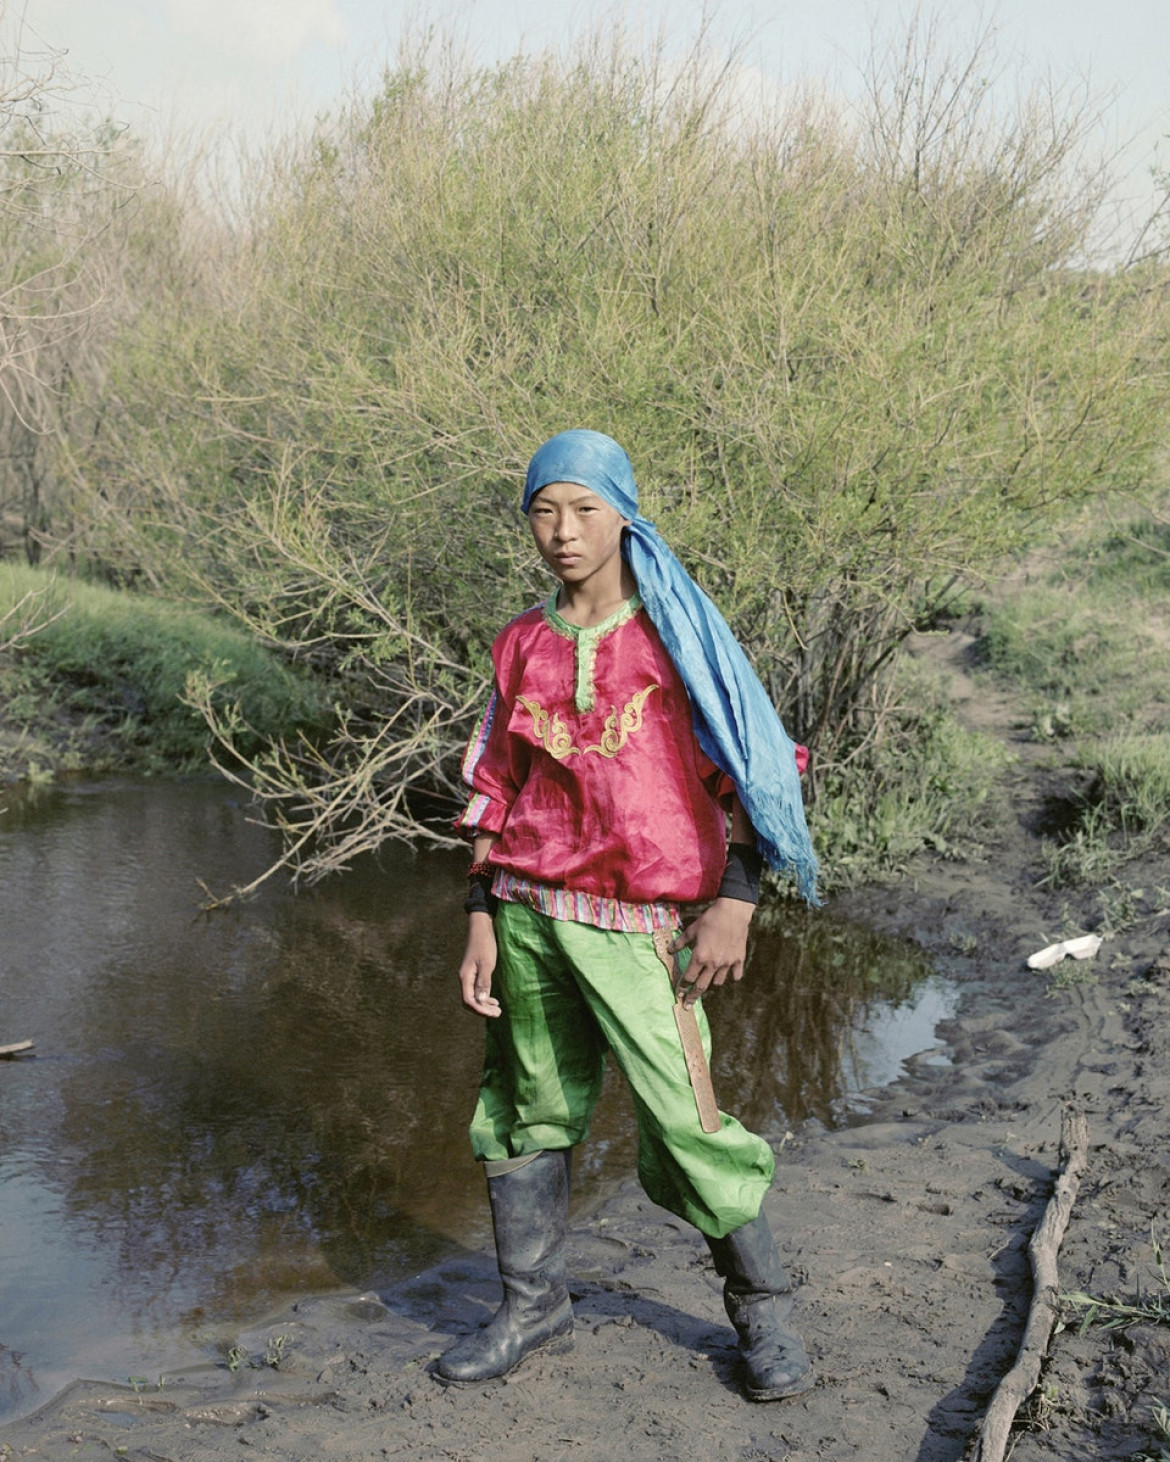 fot. Li Wei / The Portrait of Humanity Award